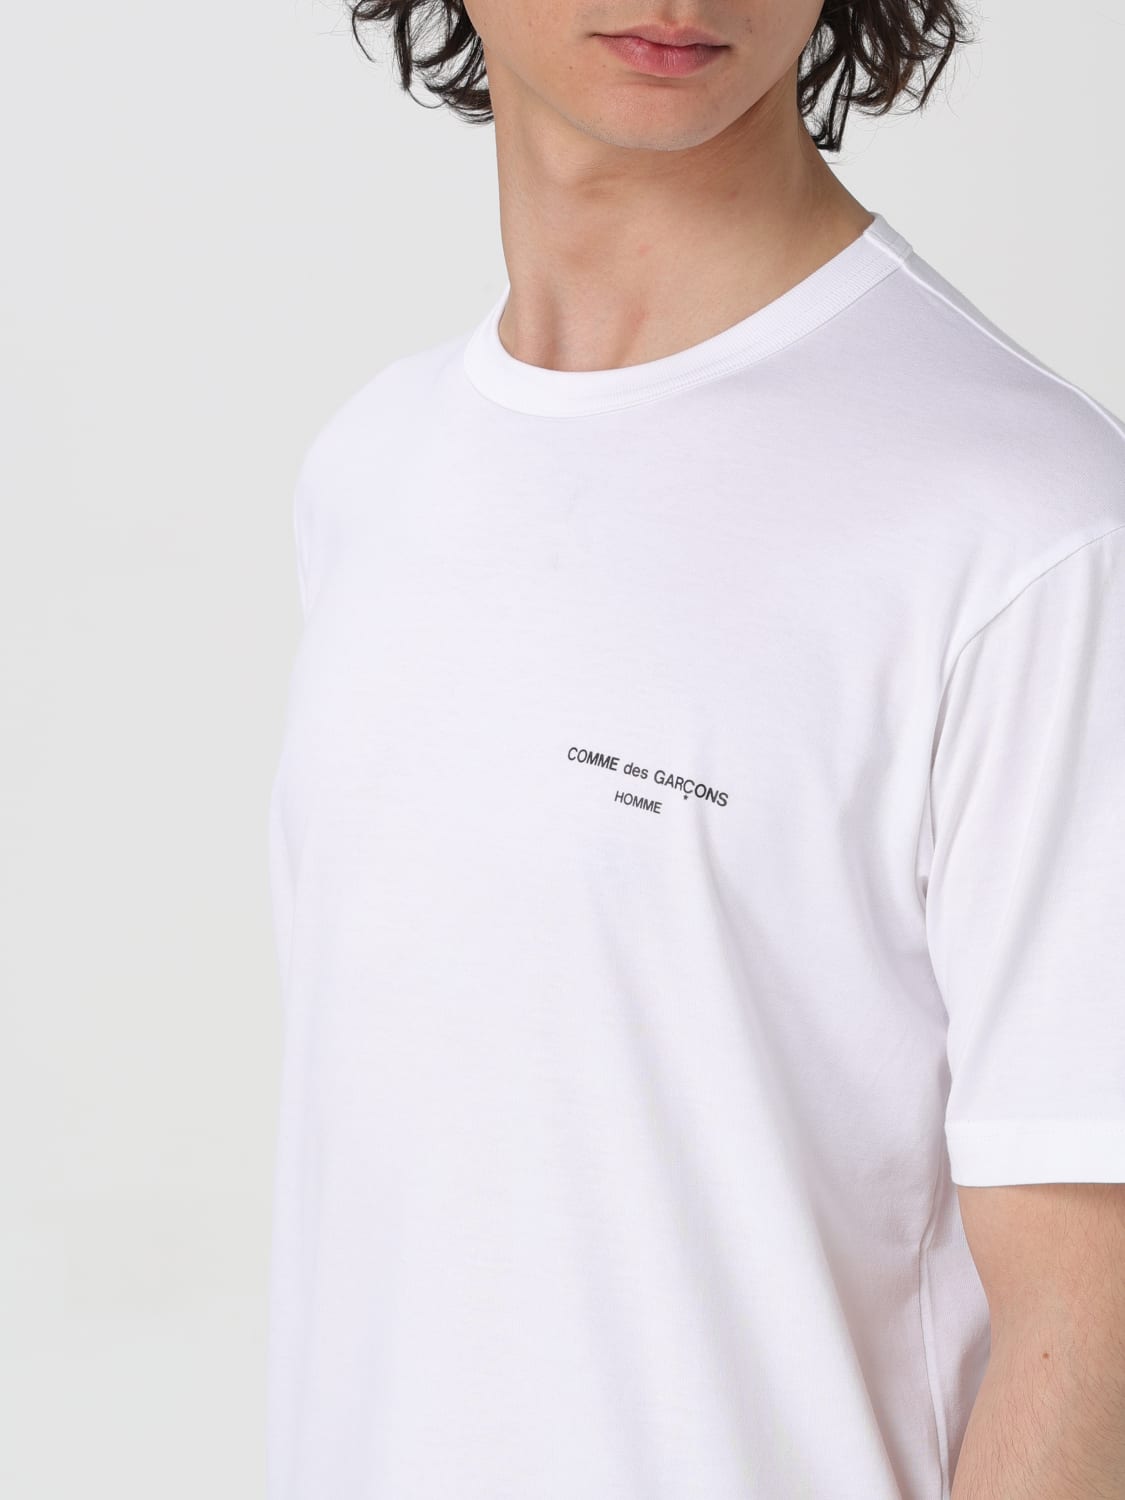 7,920円COMME des GARCONS HOMME PLUS Tシャツ  メンズ